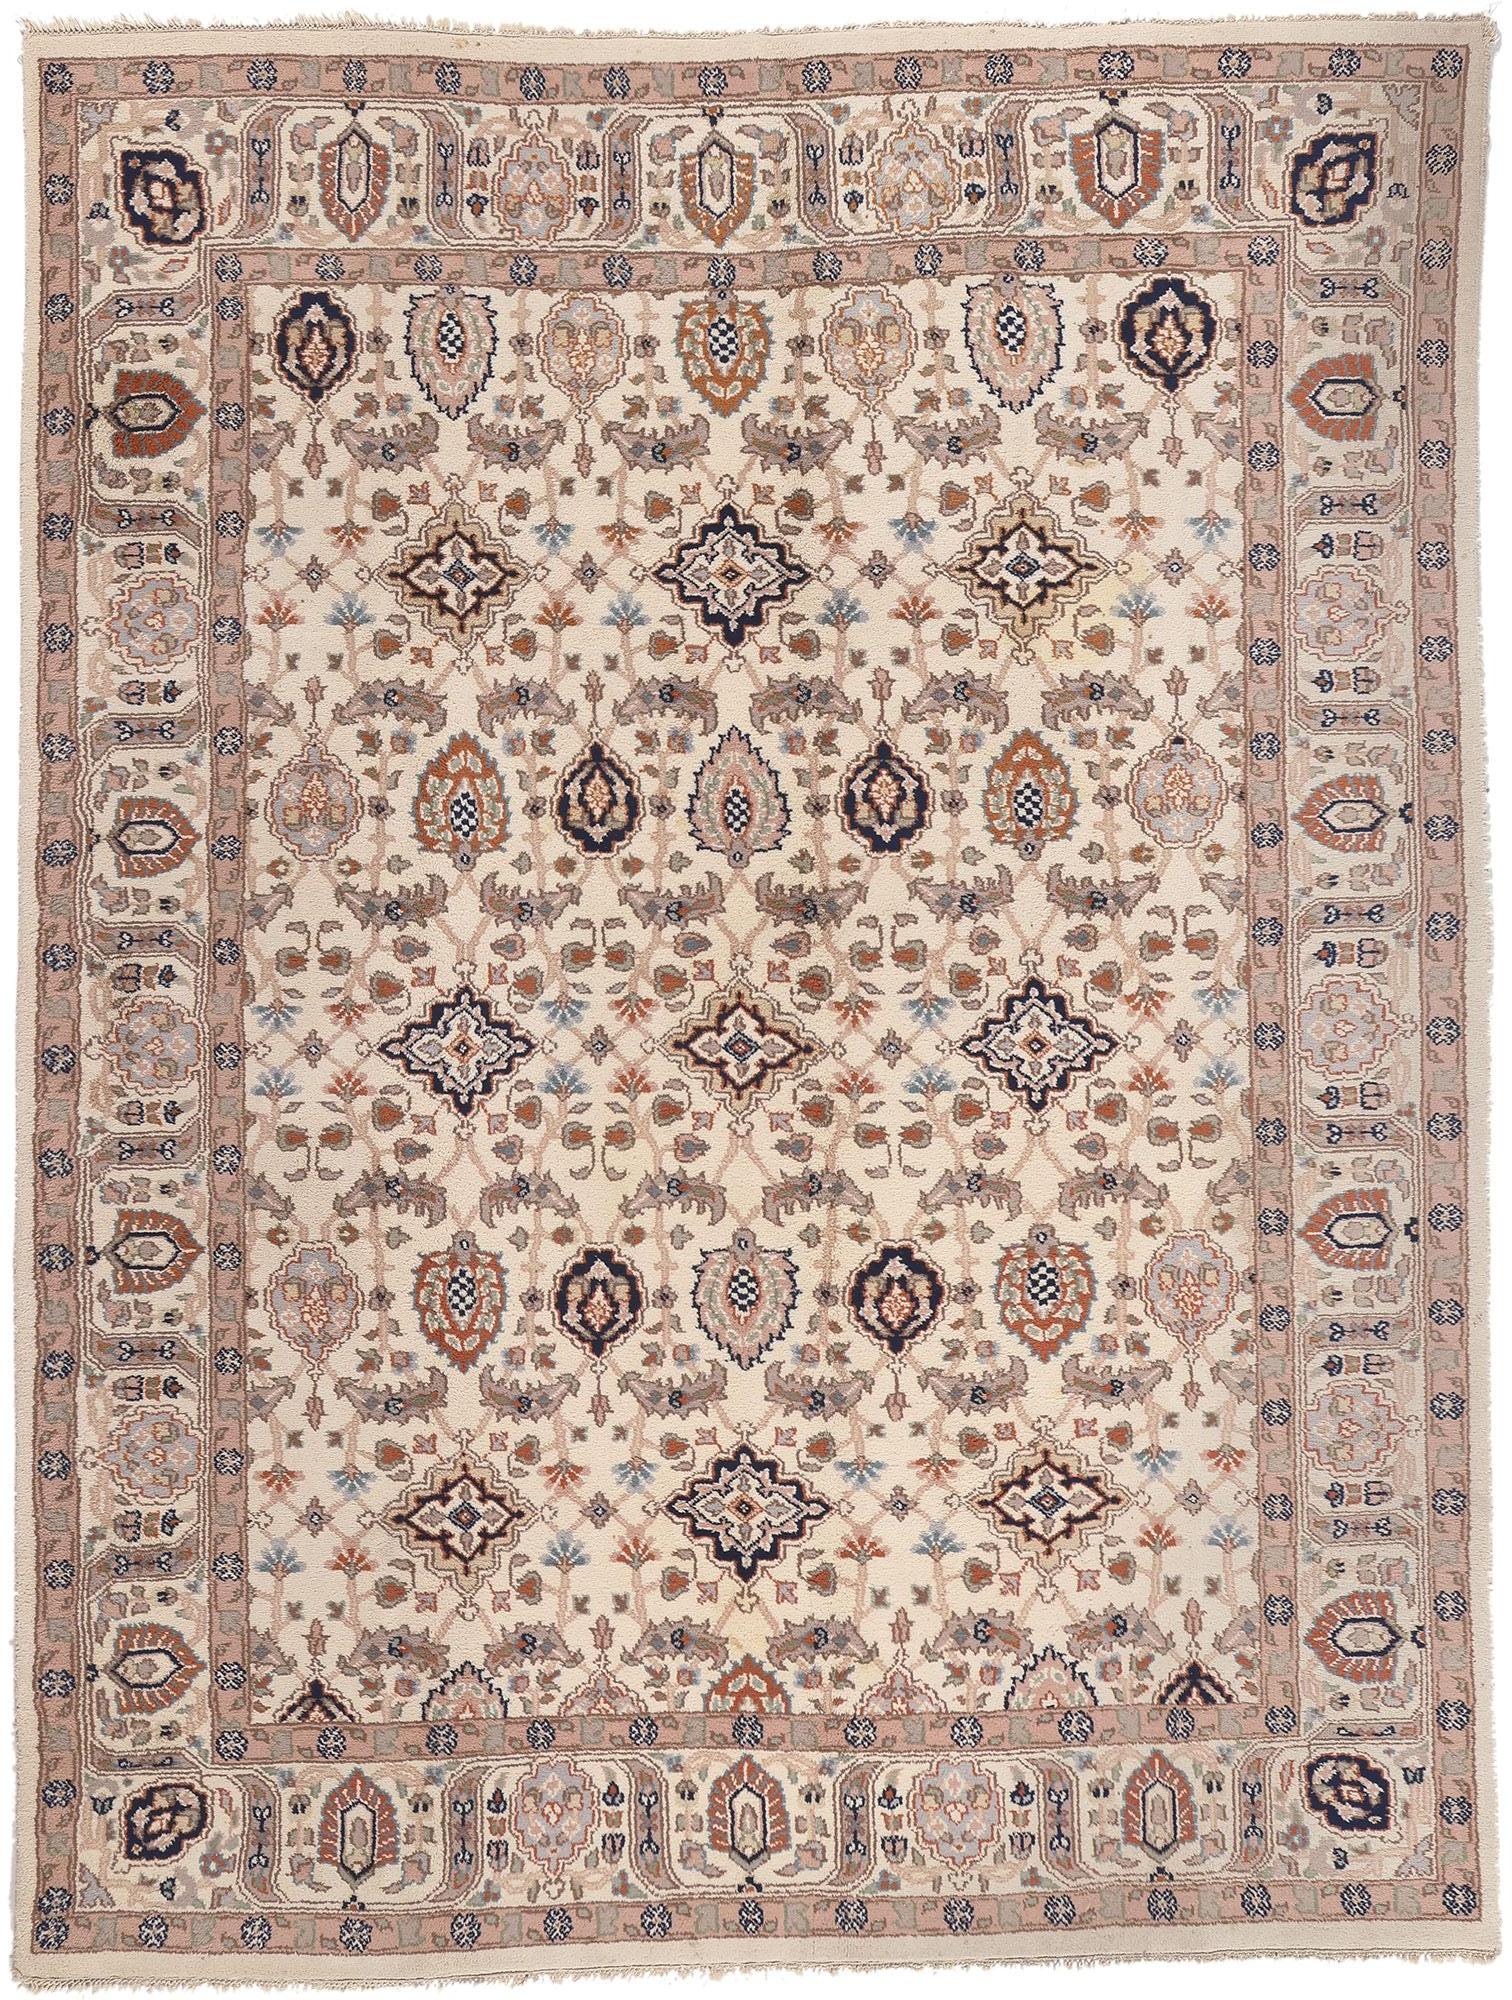 Indischer Tabriz-Teppich im Vintage-Look, William & Mary-Stil trifft auf traditionelles Design